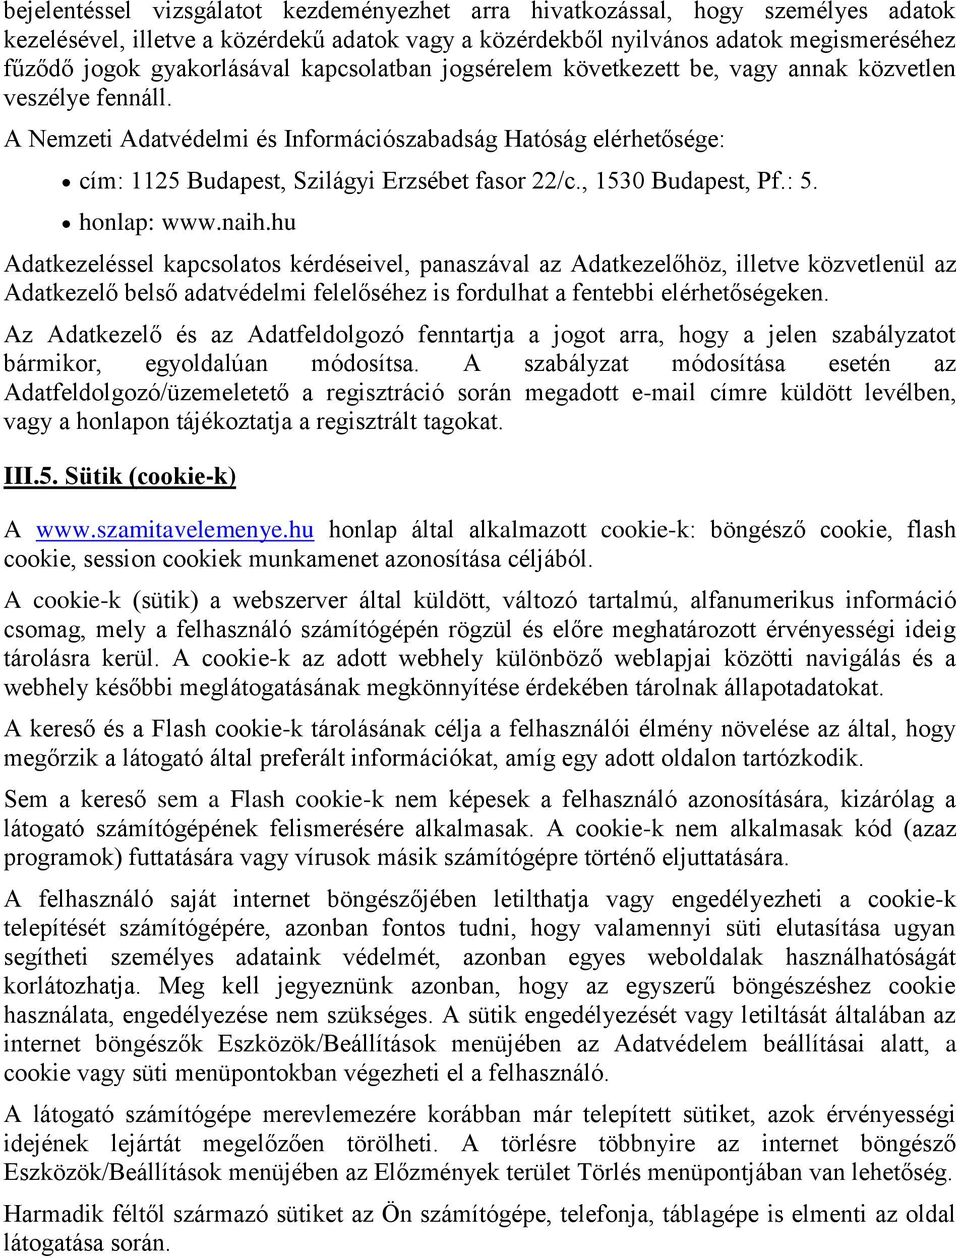 A Nemzeti Adatvédelmi és Információszabadság Hatóság elérhetősége: cím: 1125 Budapest, Szilágyi Erzsébet fasor 22/c., 1530 Budapest, Pf.: 5. honlap: www.naih.